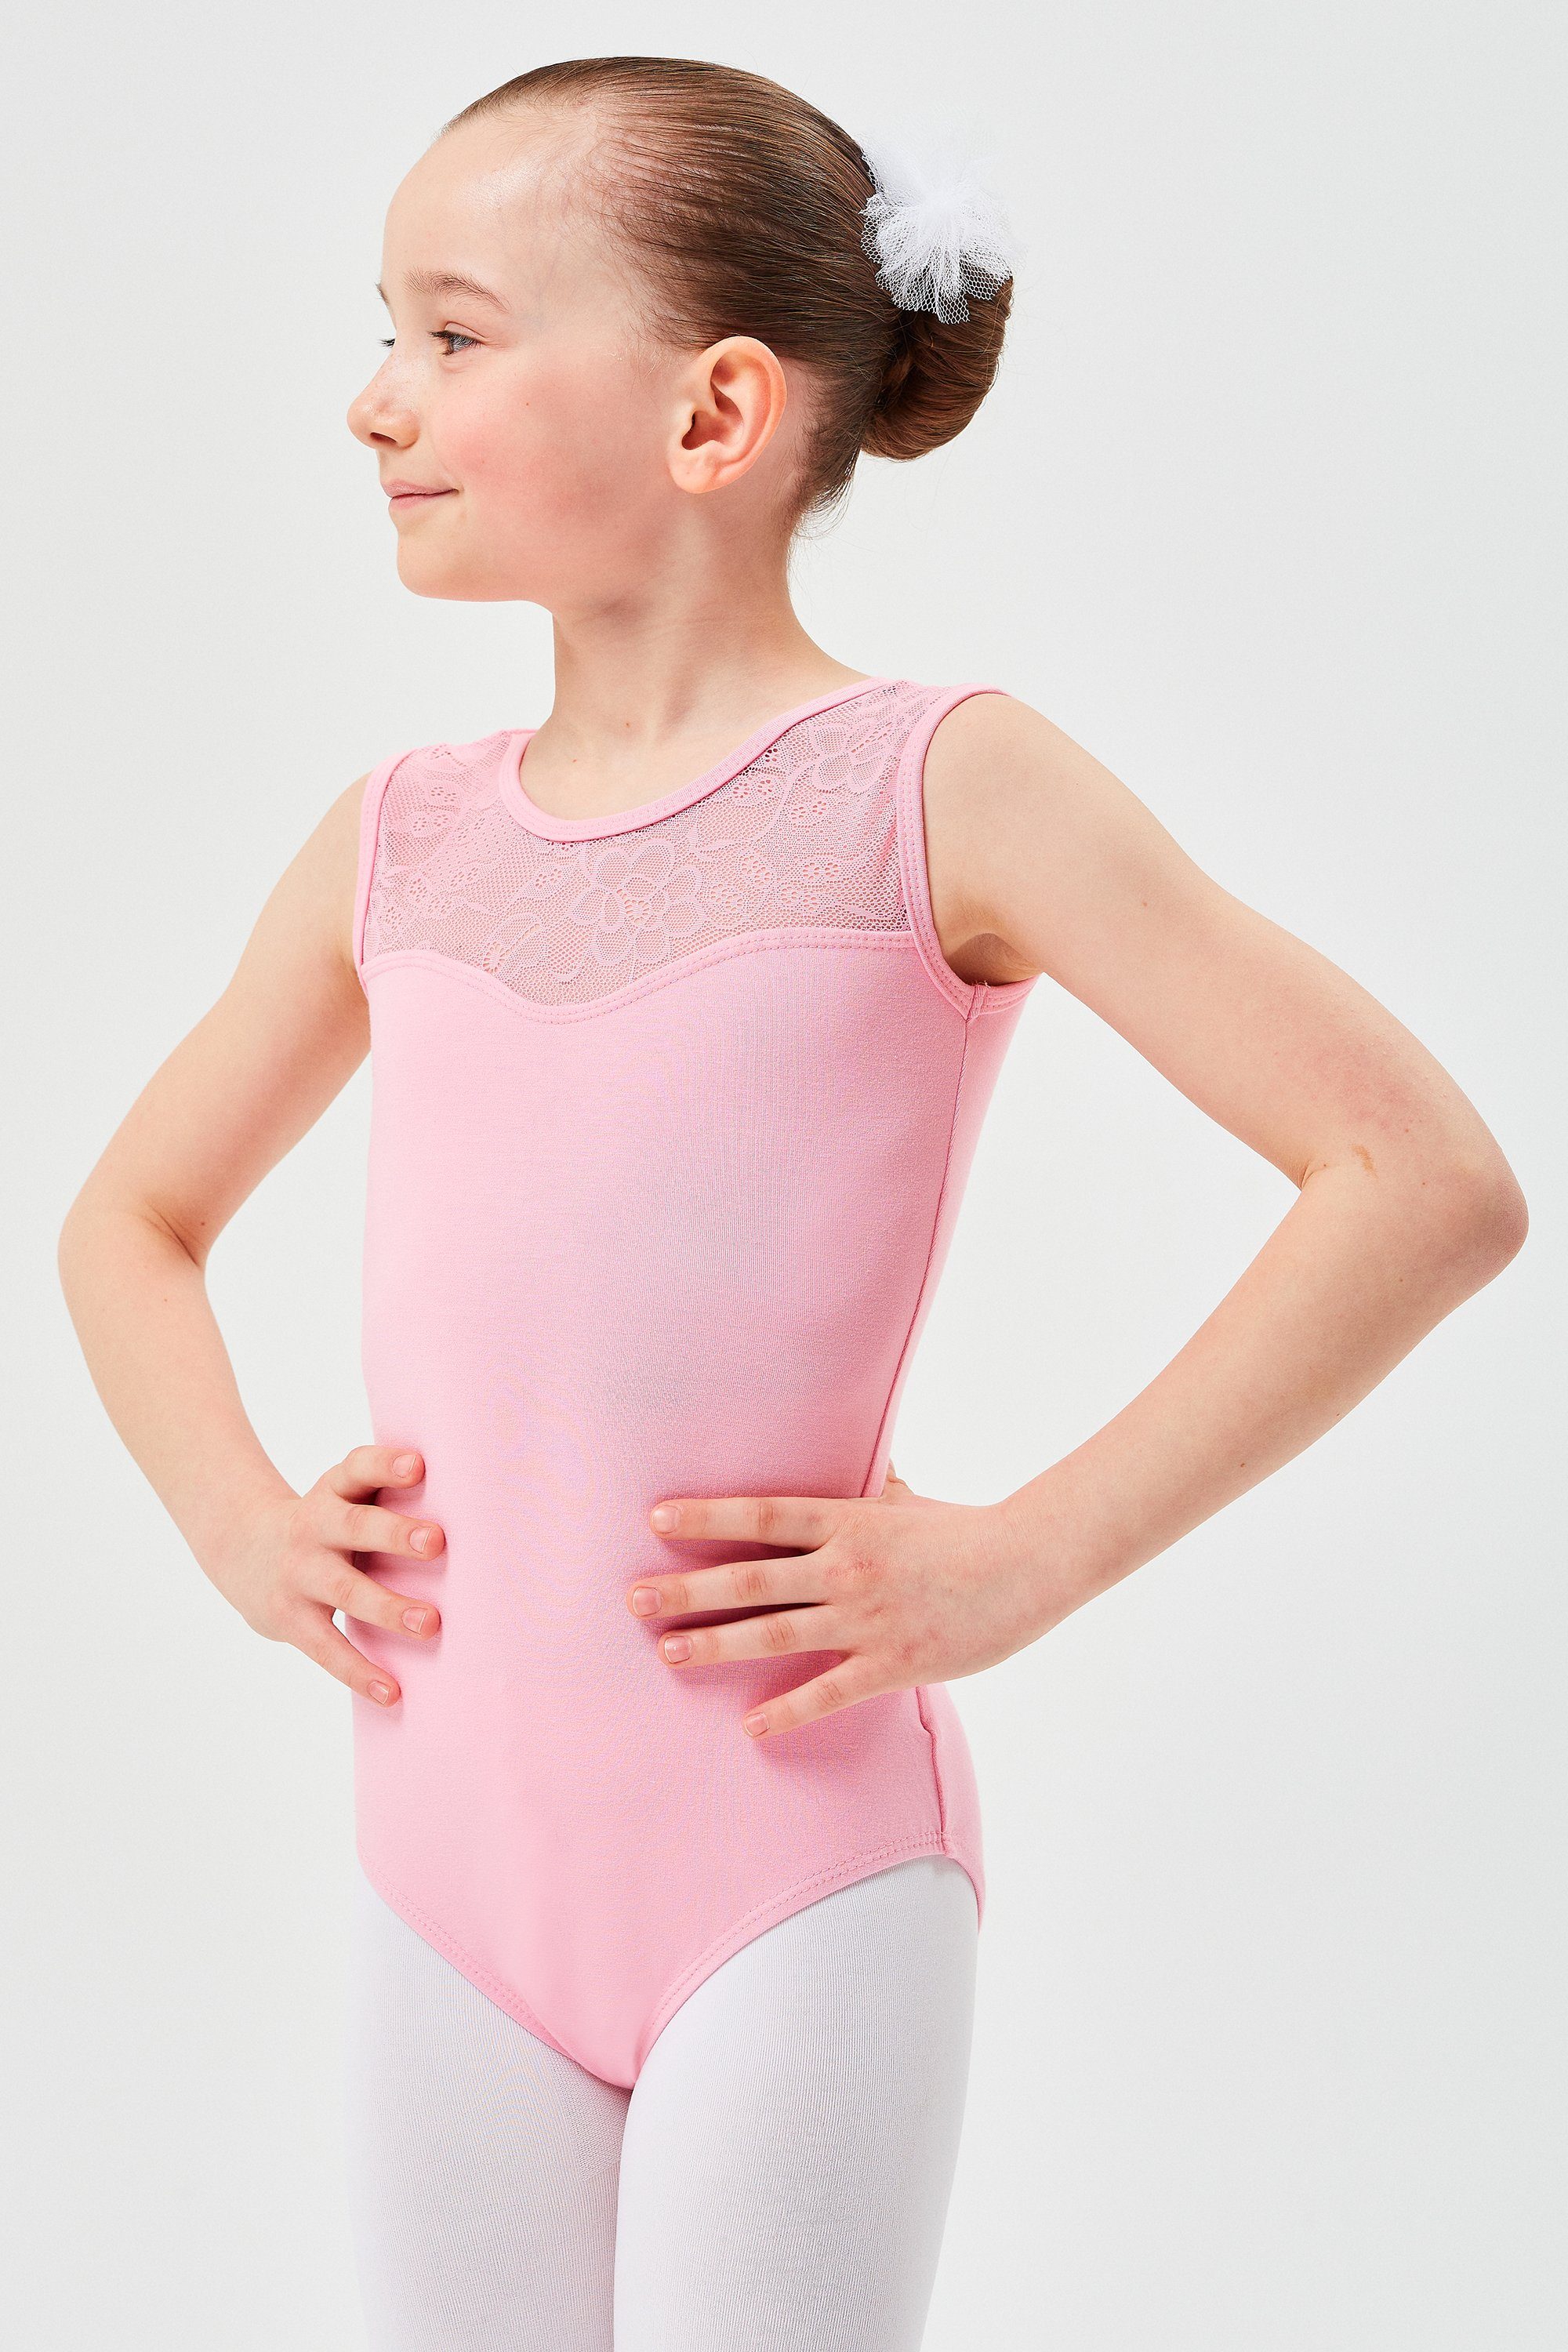 tanzmuster Body Ballett Trikot Cora mit Spitzeneinsatz ärmelloser Ballettbody aus weichem Baumwollmischgewebe rosa